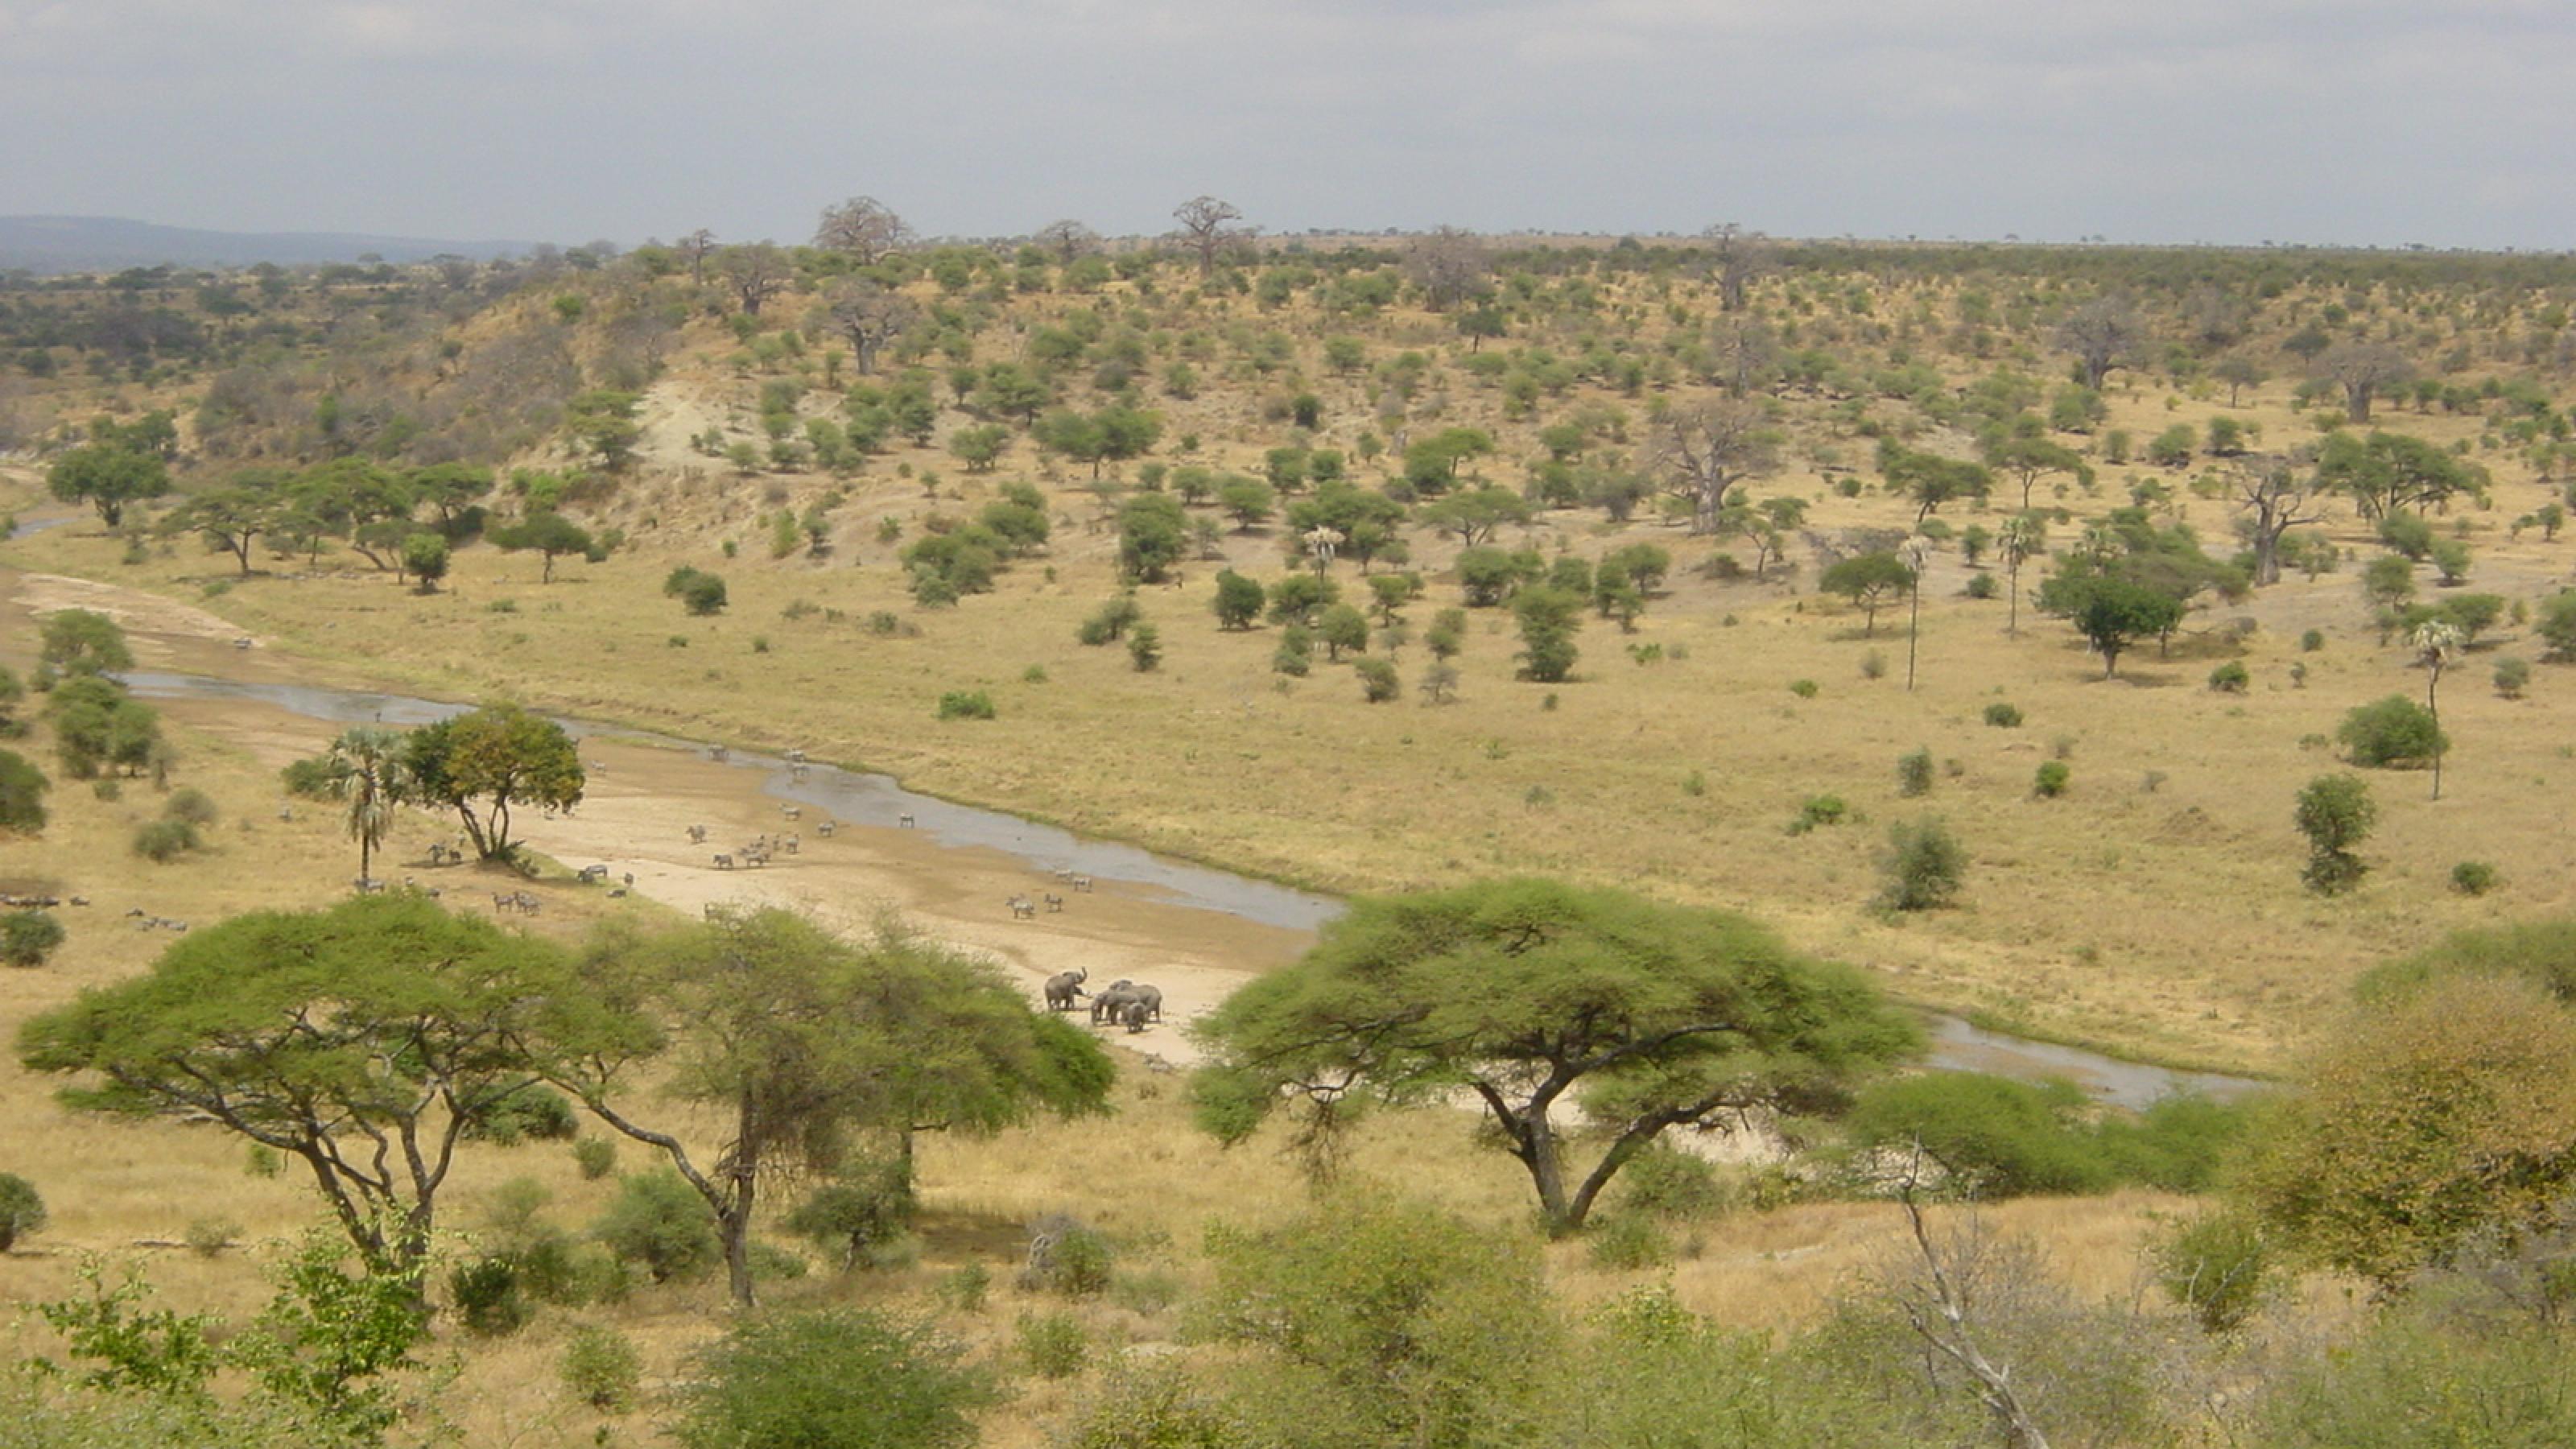 Die afrikanische Savanne ist eine Mischung aus offenem Grasland und vereinzelten Bäumen oder Baumgruppen. In einer ähnlichen Landschaft lebten einst die Nussknackermenschen